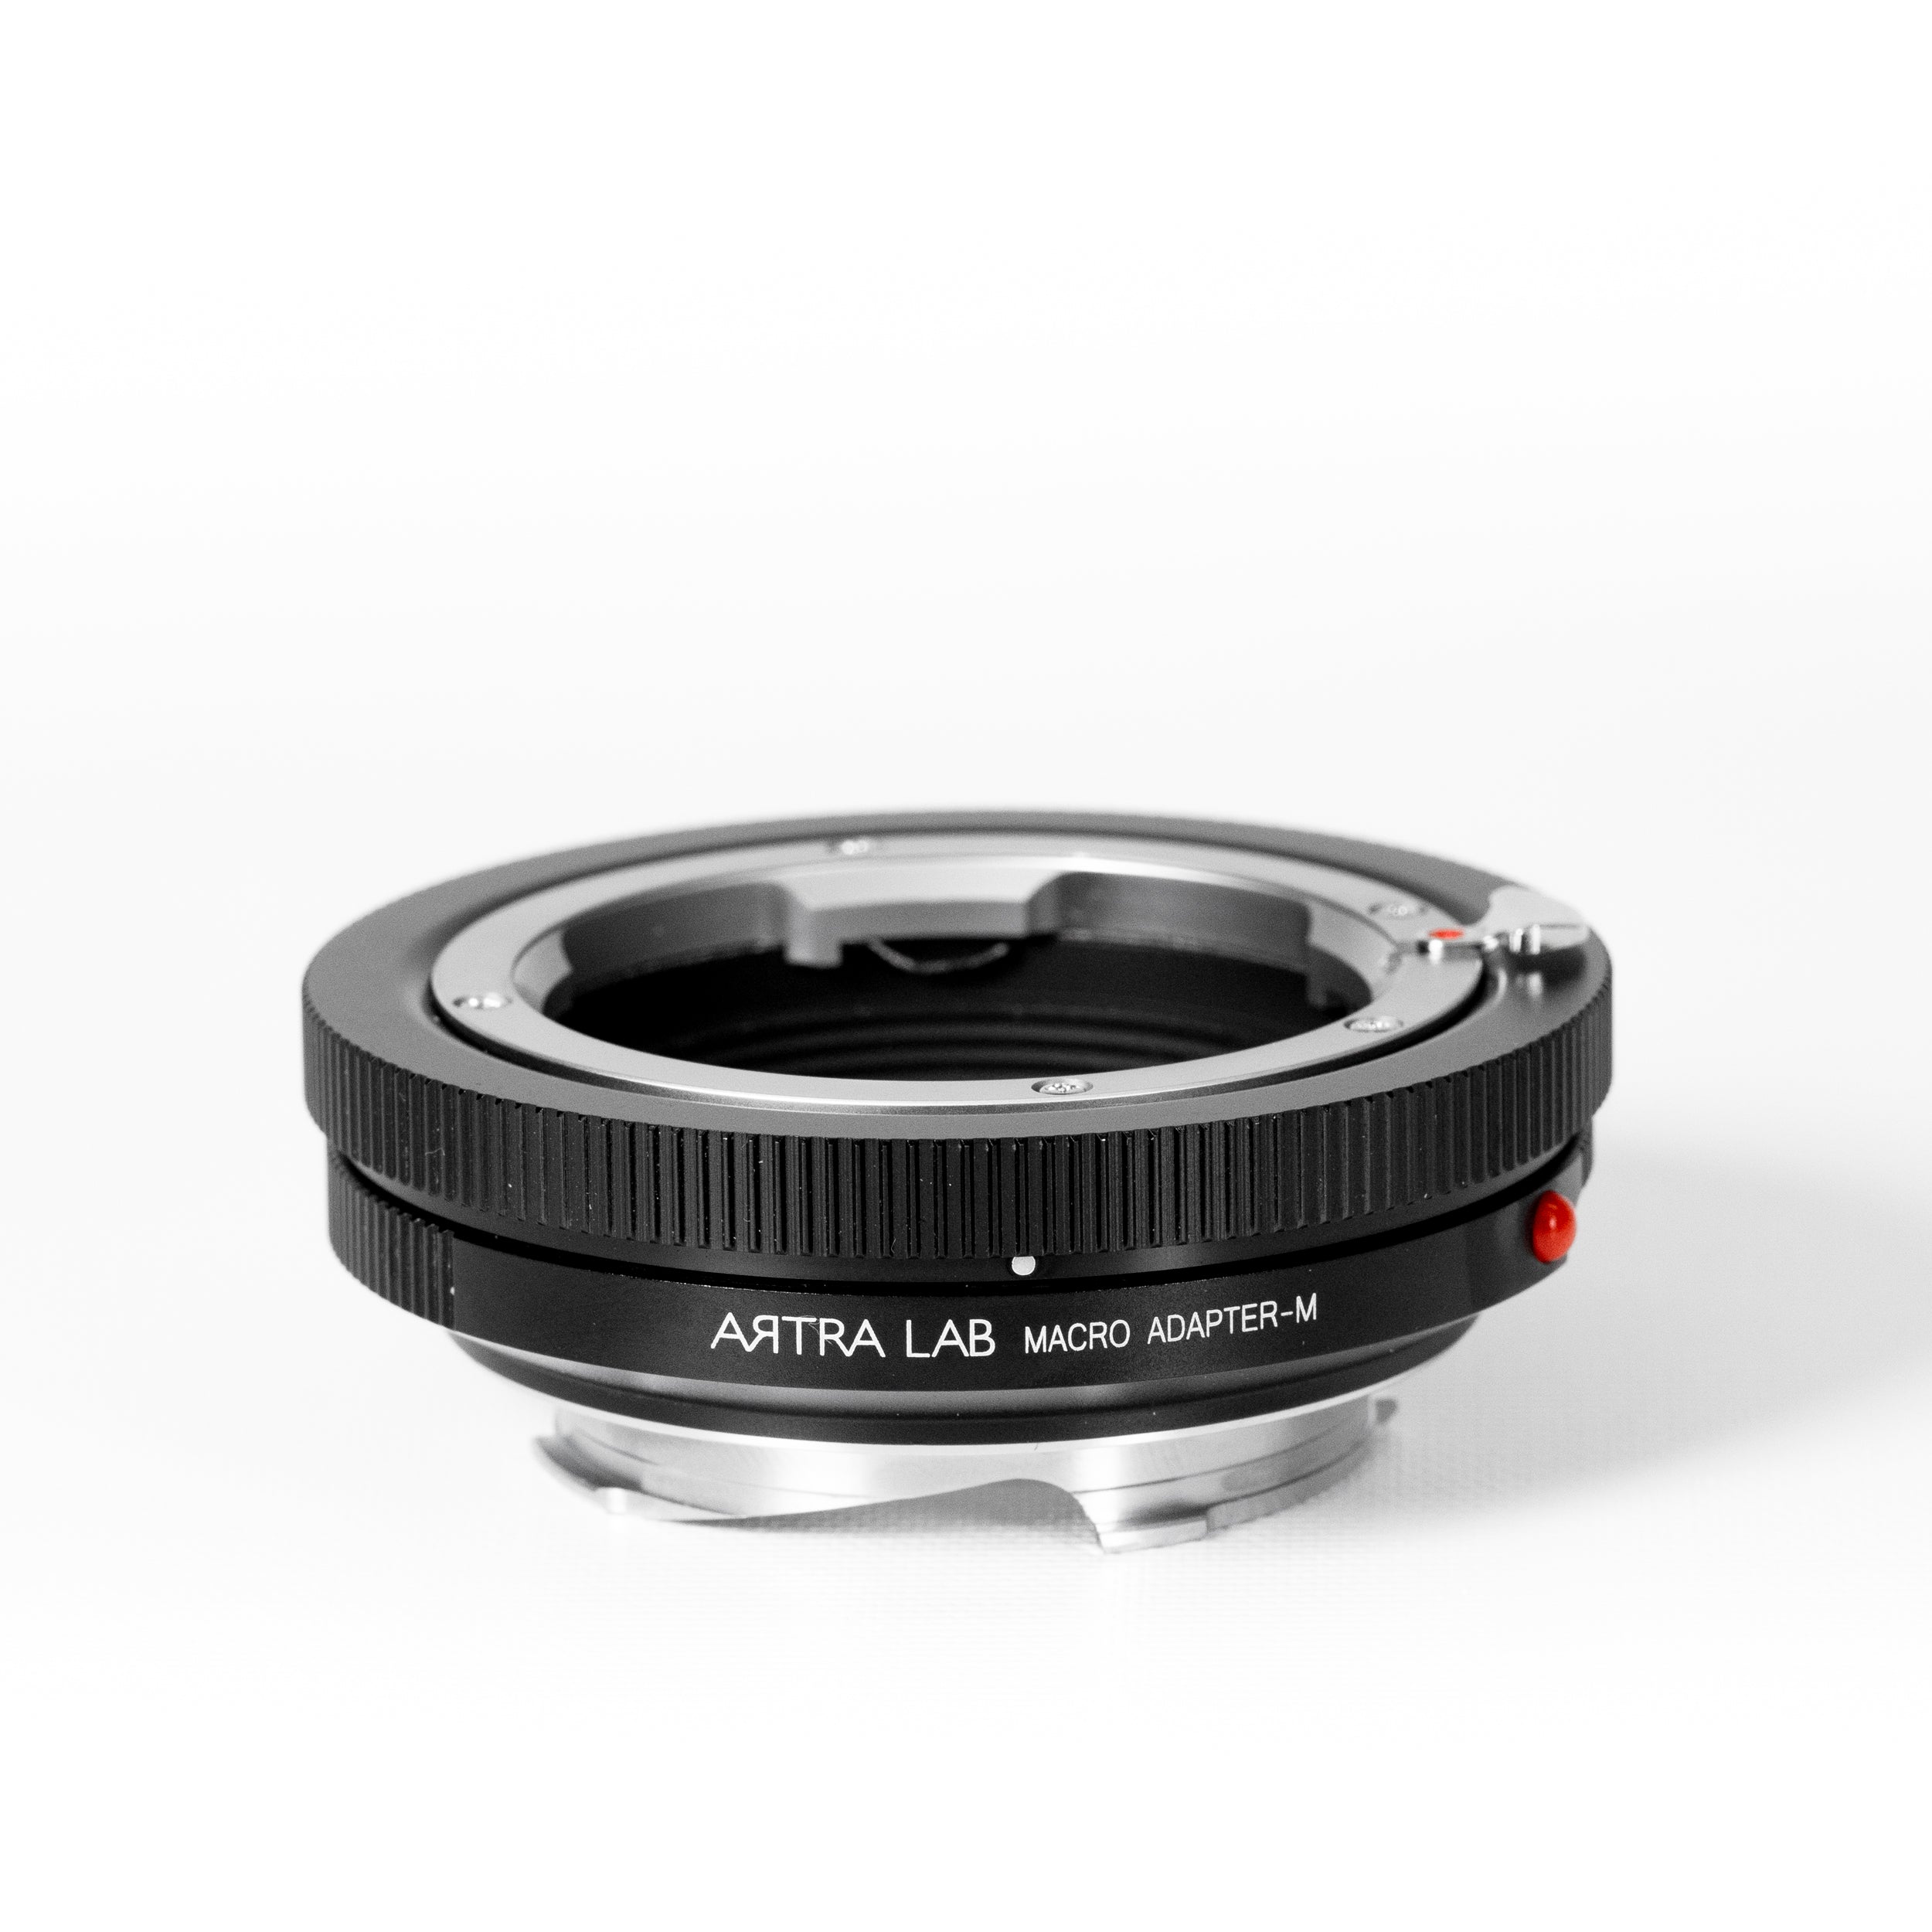 ARTRA LAB Leica M mount LM-LM Close focus Macro Adaptor M for Leica Rangfinder Camera